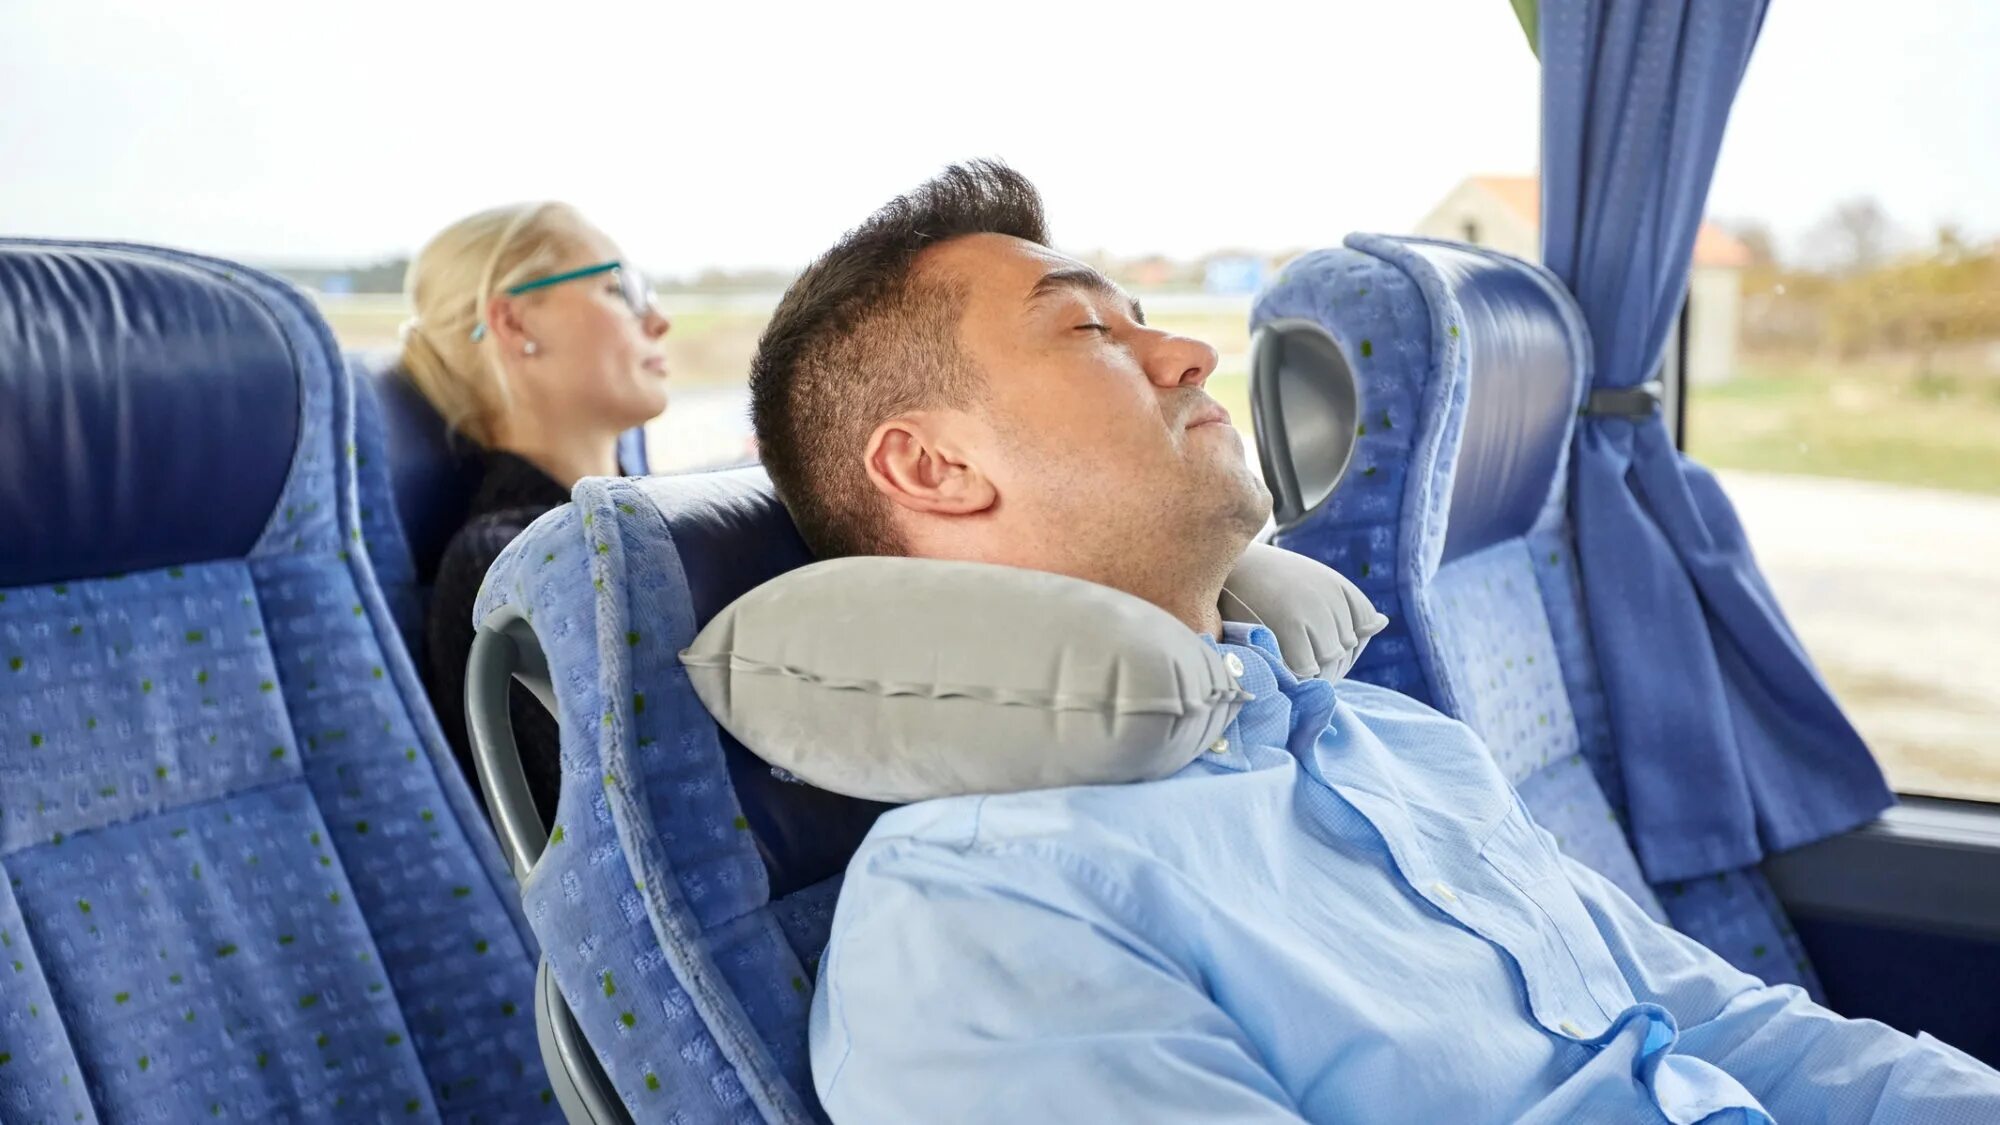 Подушка для путешествий в автобусе. Подушка для сна в транспорте. Подушка для сна в автобусе. Путешествия с комфортом.